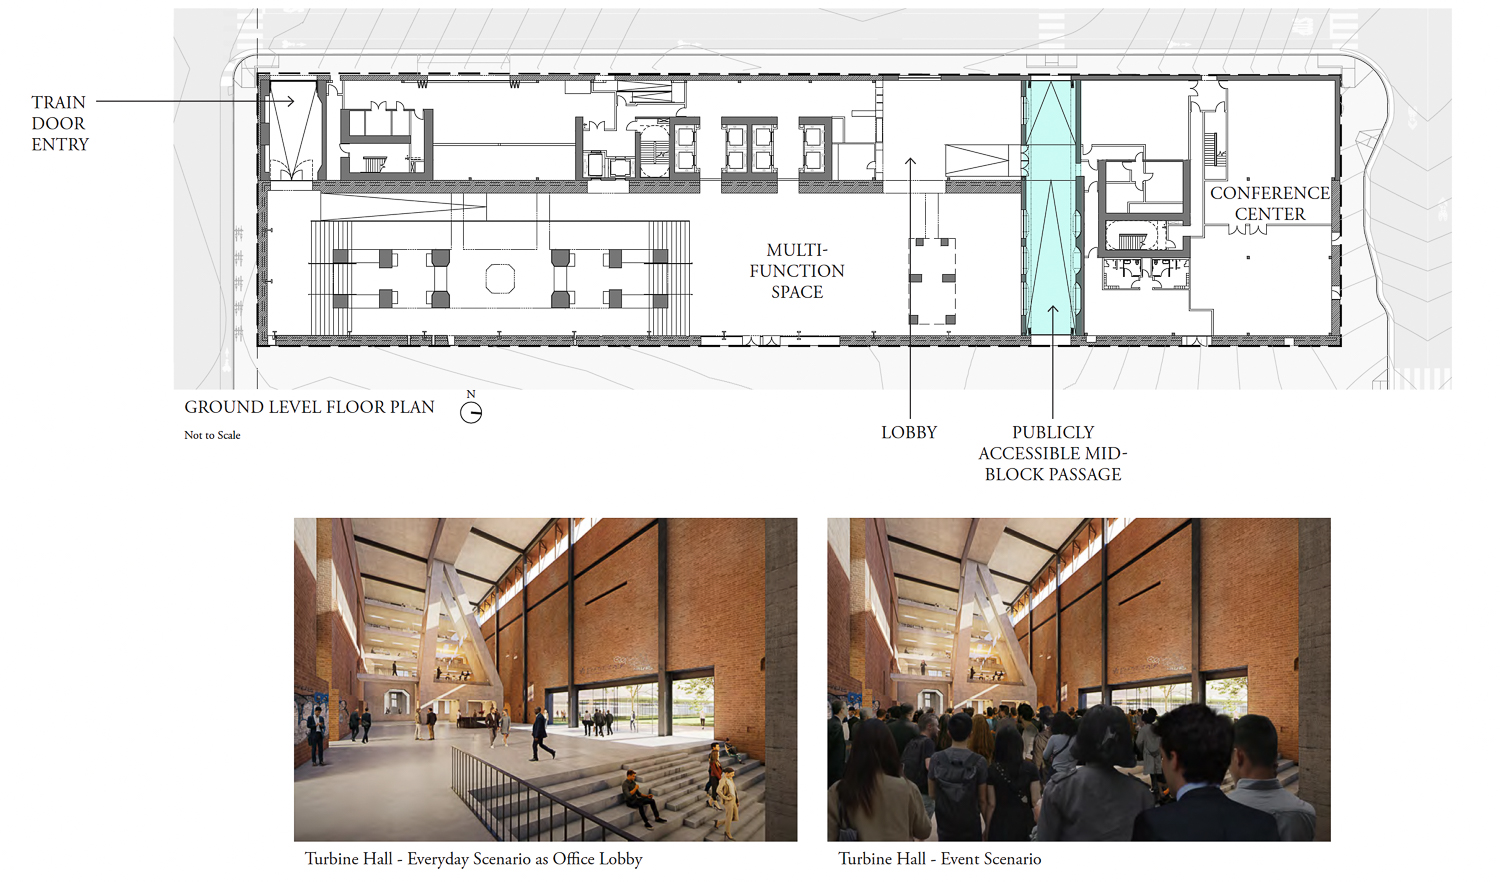 Potrero Power Station Block 15 ground-level floor plan, rendering by Herzog & de Meuron